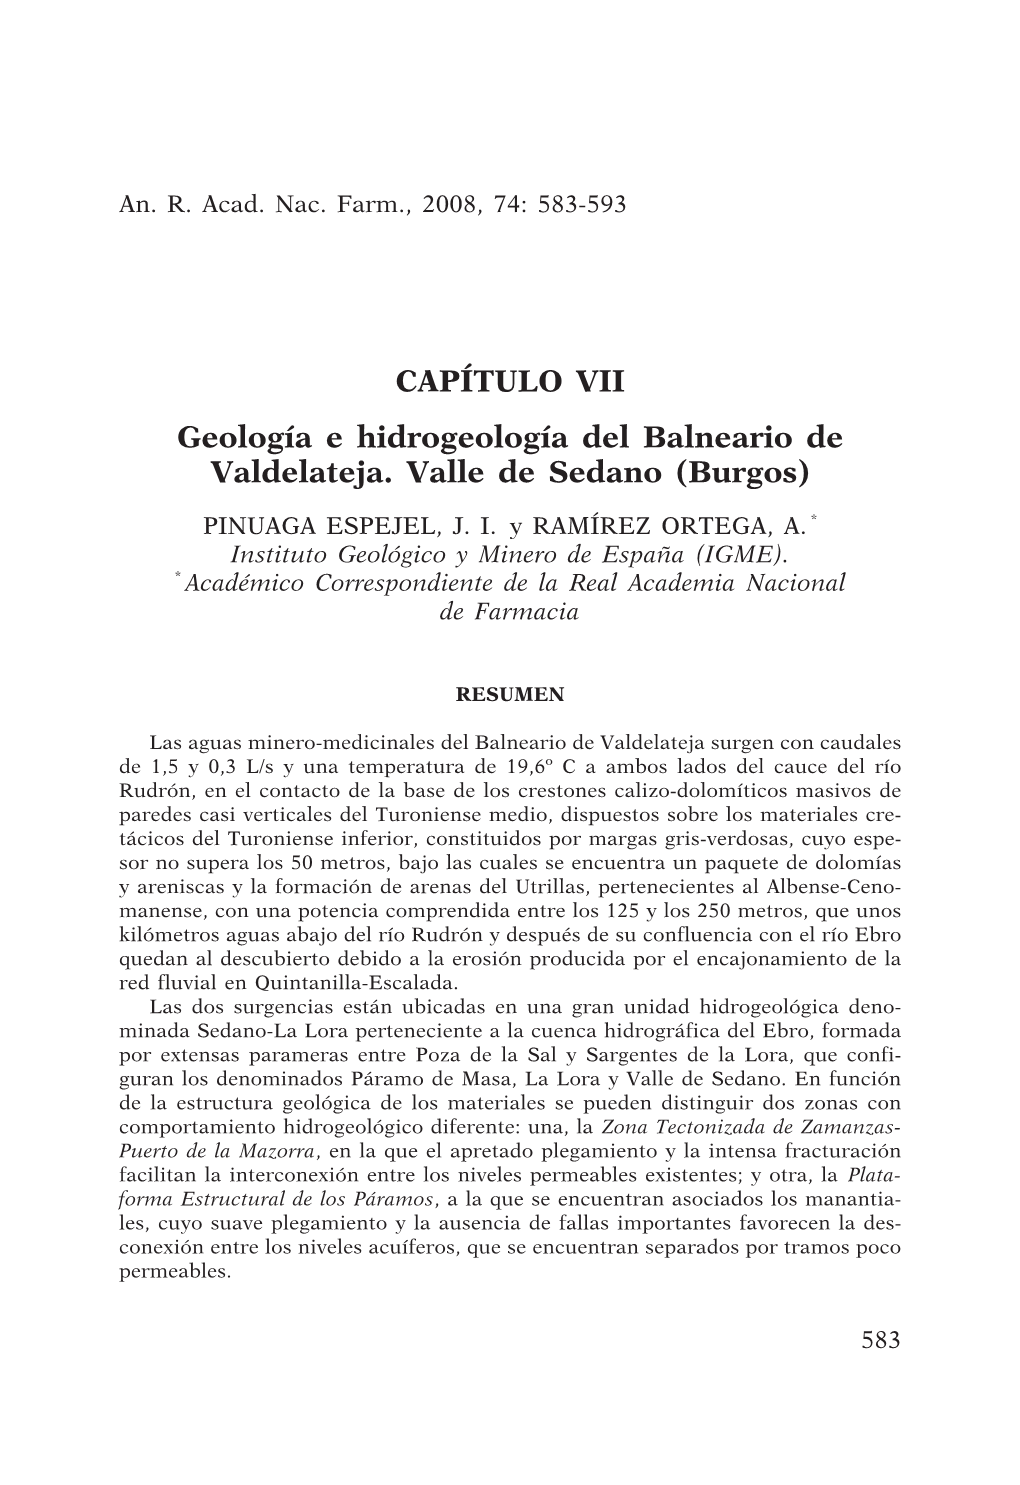 CAPÍTULO VII Geología E Hidrogeología Del Balneario De Valdelateja. Valle De Sedano (Burgos)